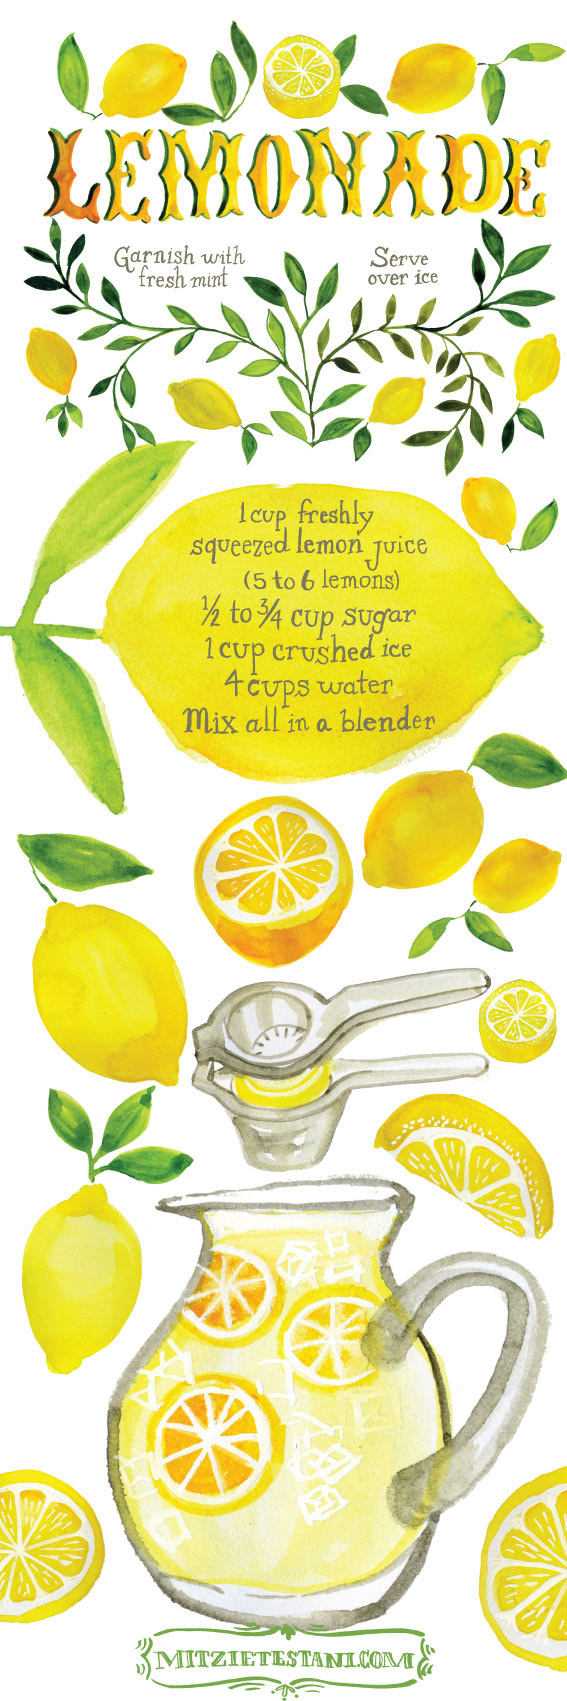 Image may contain: fruit, lemon and orange